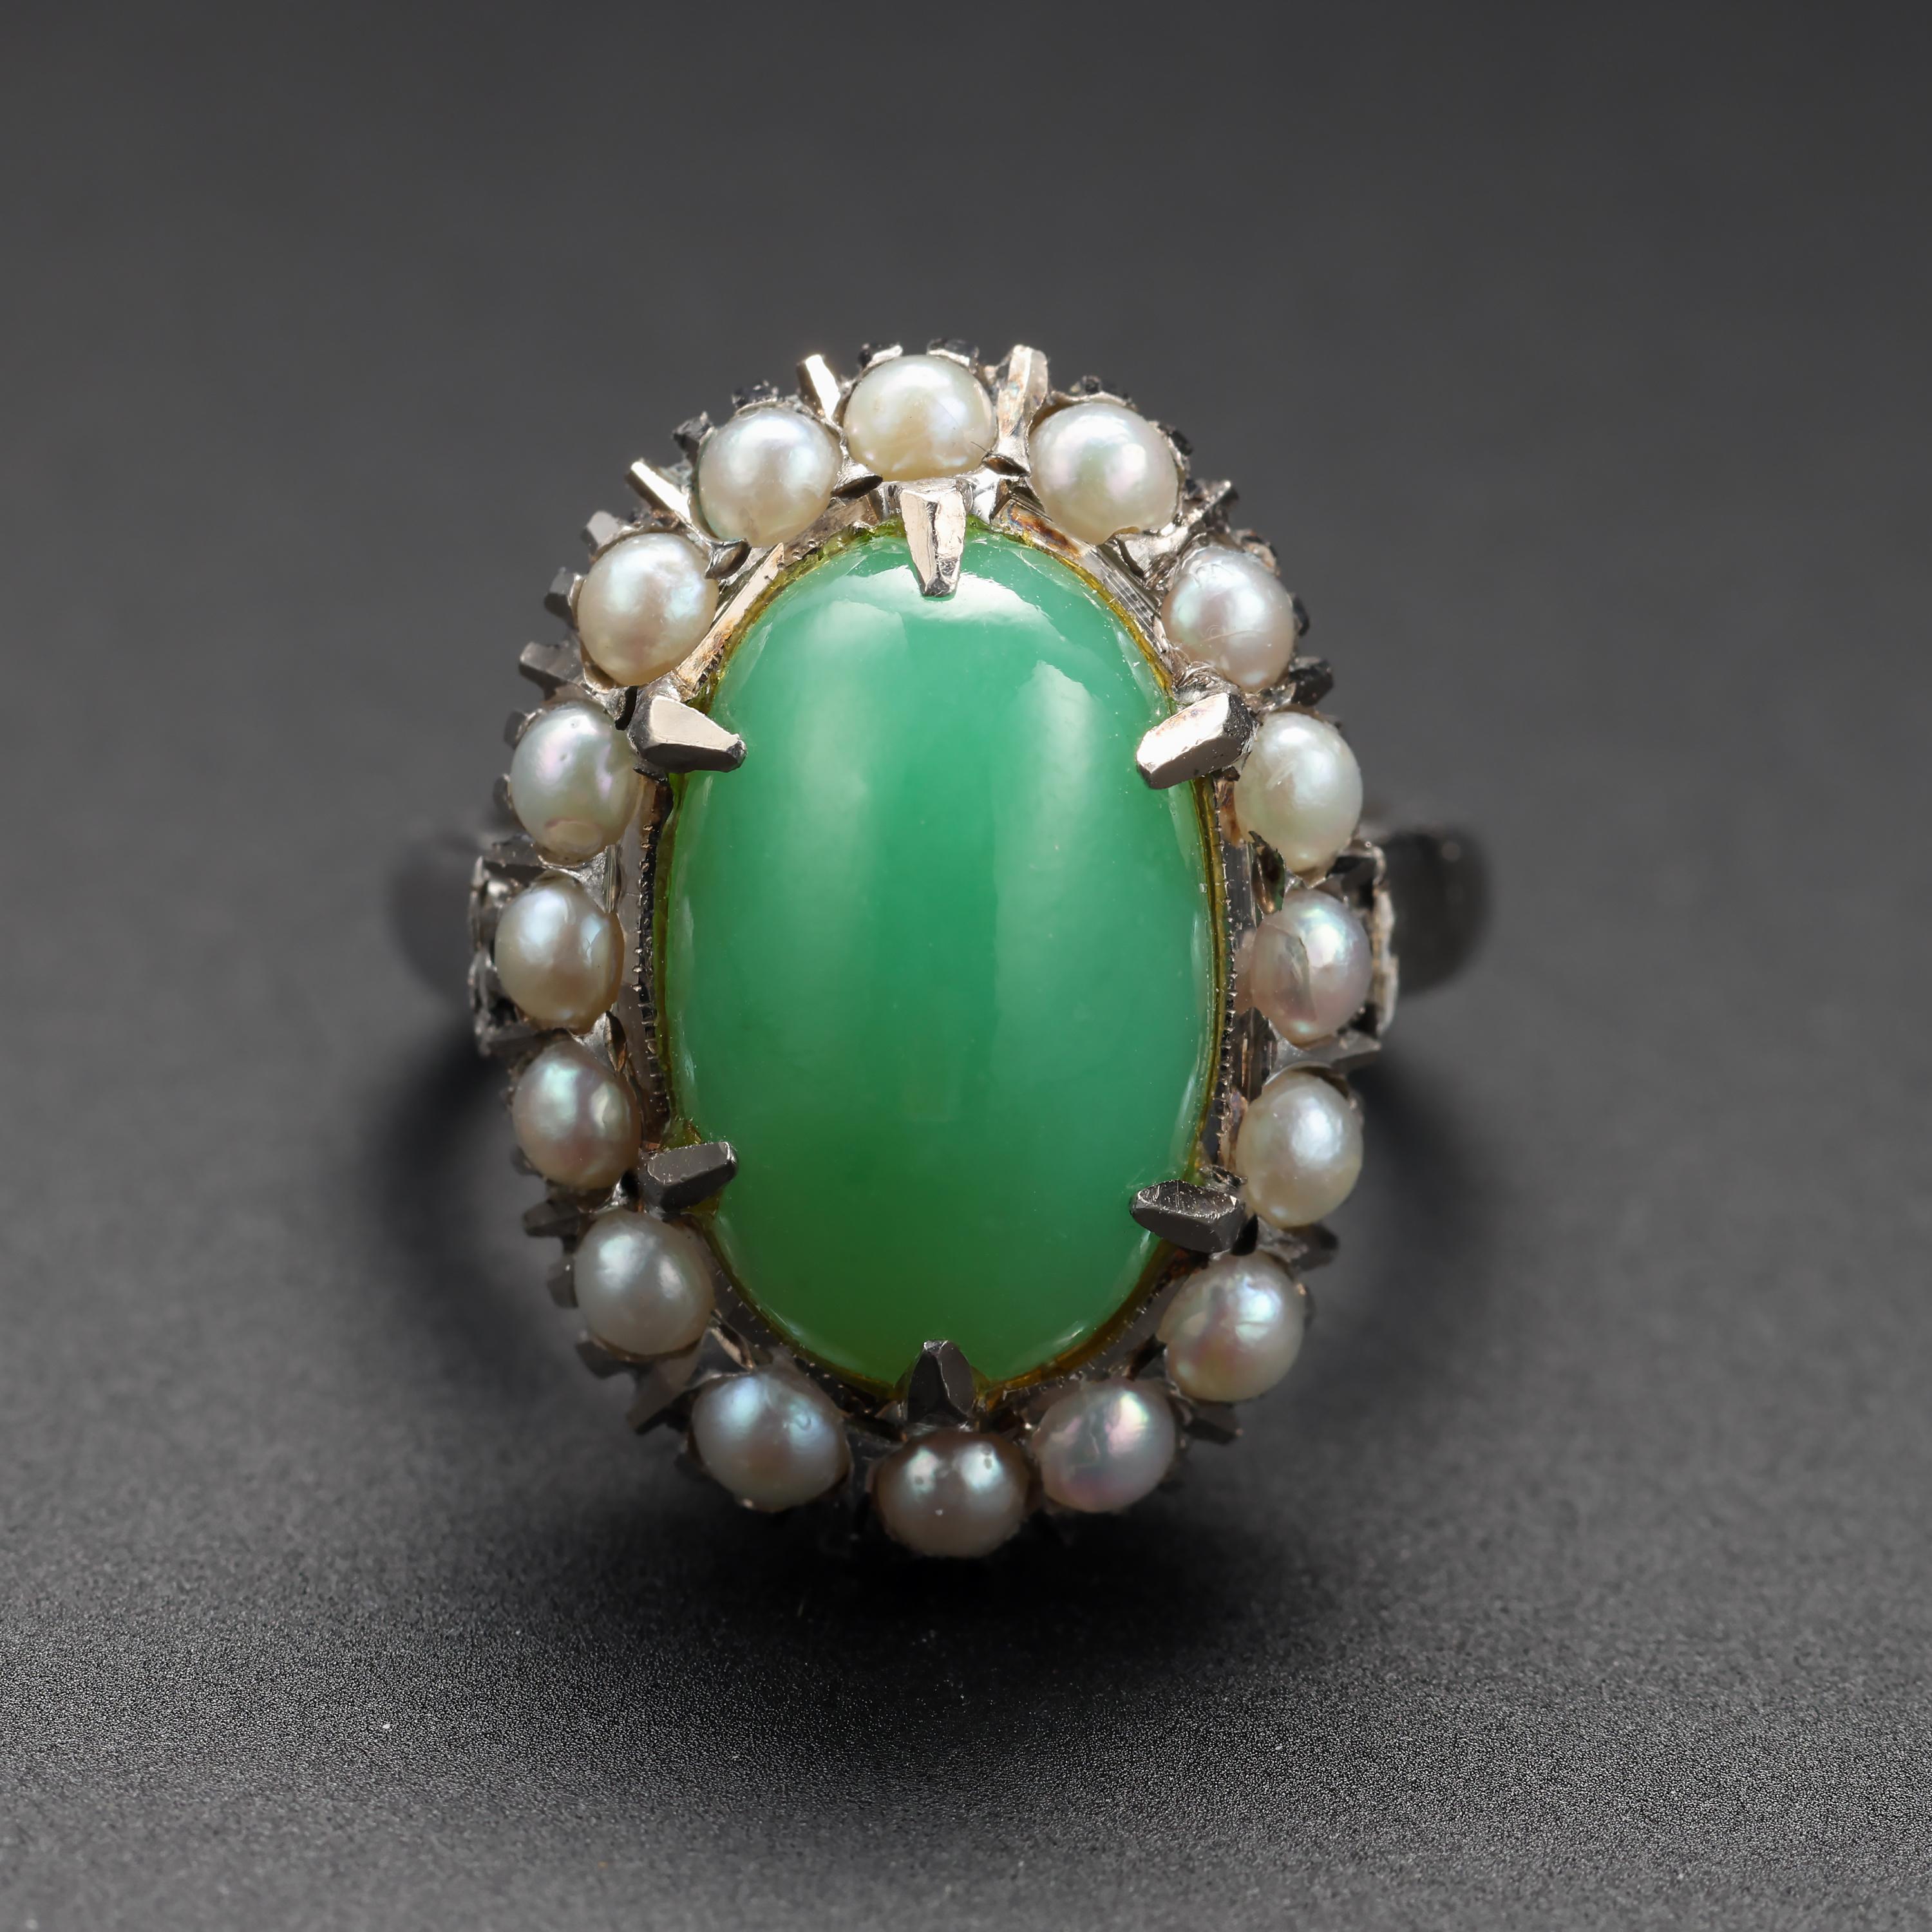 Un grand cabochon ovale de jadéite translucide vert seafoam est entouré de 16 perles naturelles lumineuses dans cette bague halo en or blanc 14 carats du début des années 1950, toujours très élégante.

La pierre de jade est naturelle et non traitée